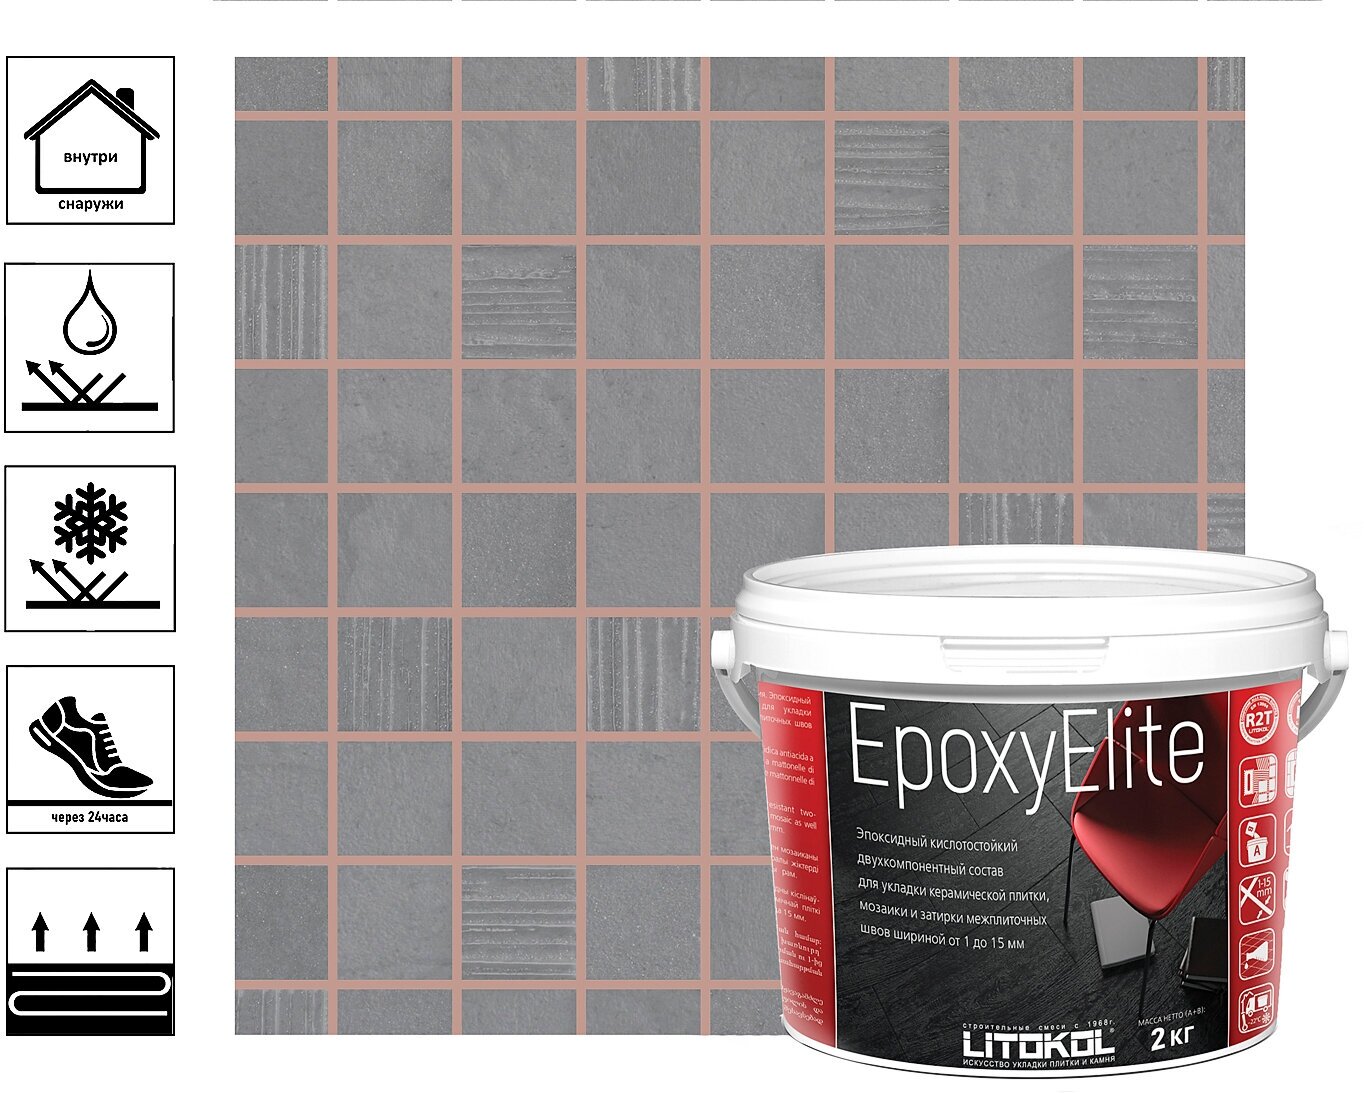 Затирка эпоксидная EpoxyElite для укладки и затирки мозаики и керамической плитки 2 кг, карамель